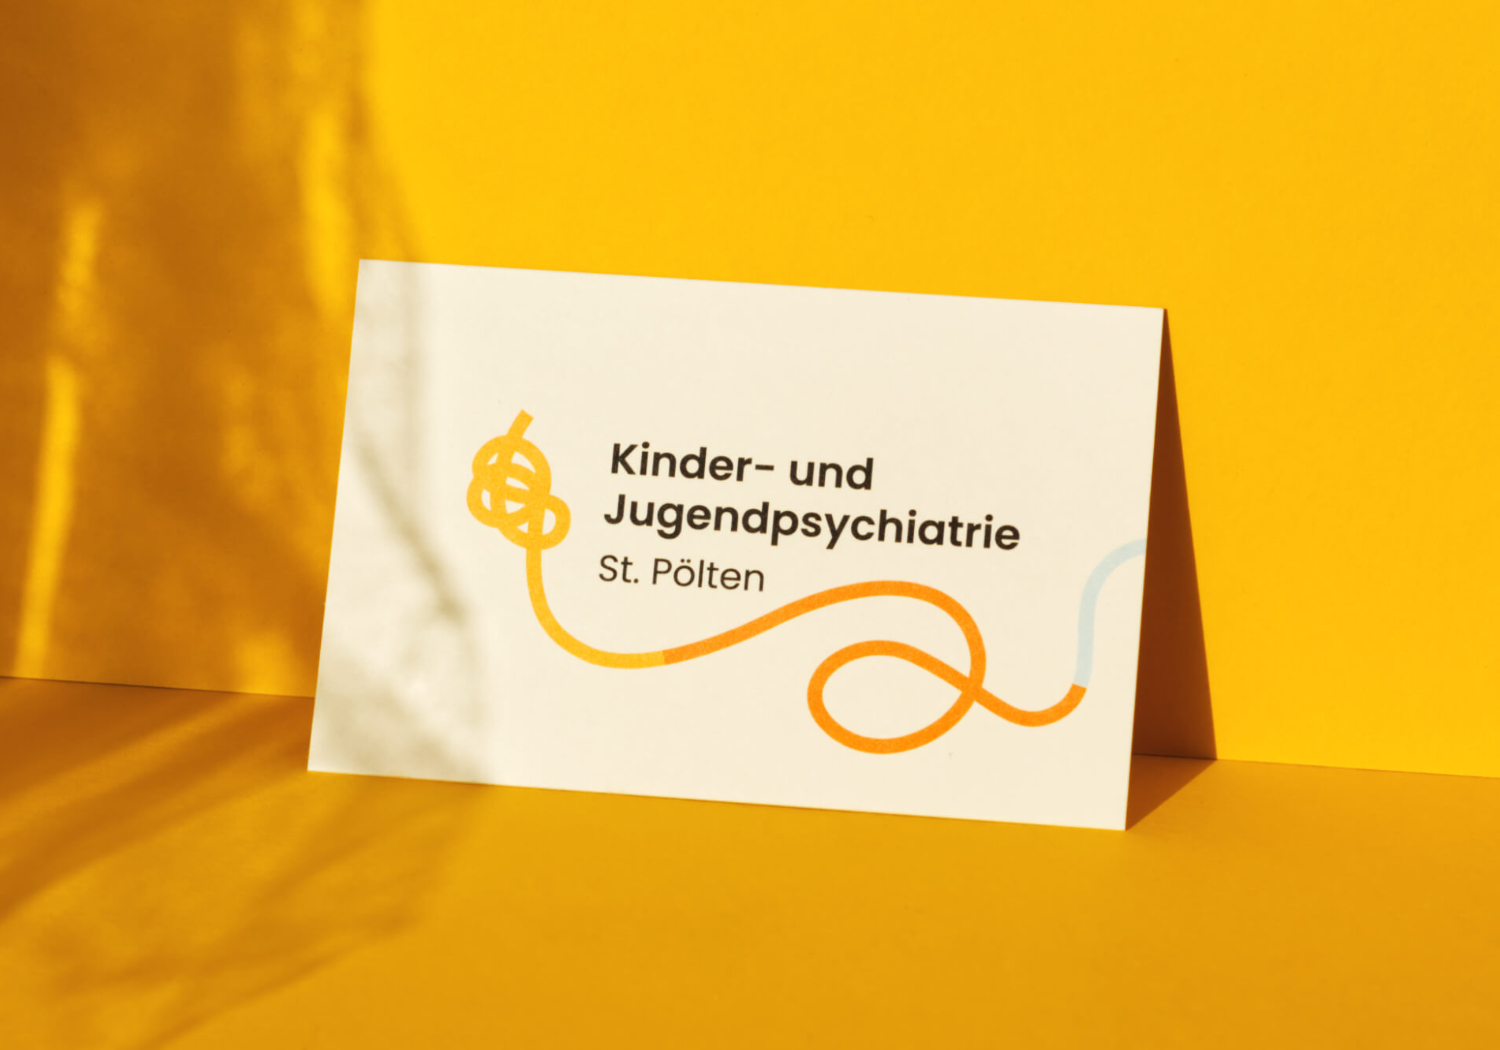 Petra-Hollander-Kinder-und-Jugendpsychiatrie-St-Poelten-Branding-Illustration-Graphic-Design-Wien-Vienna-thumb